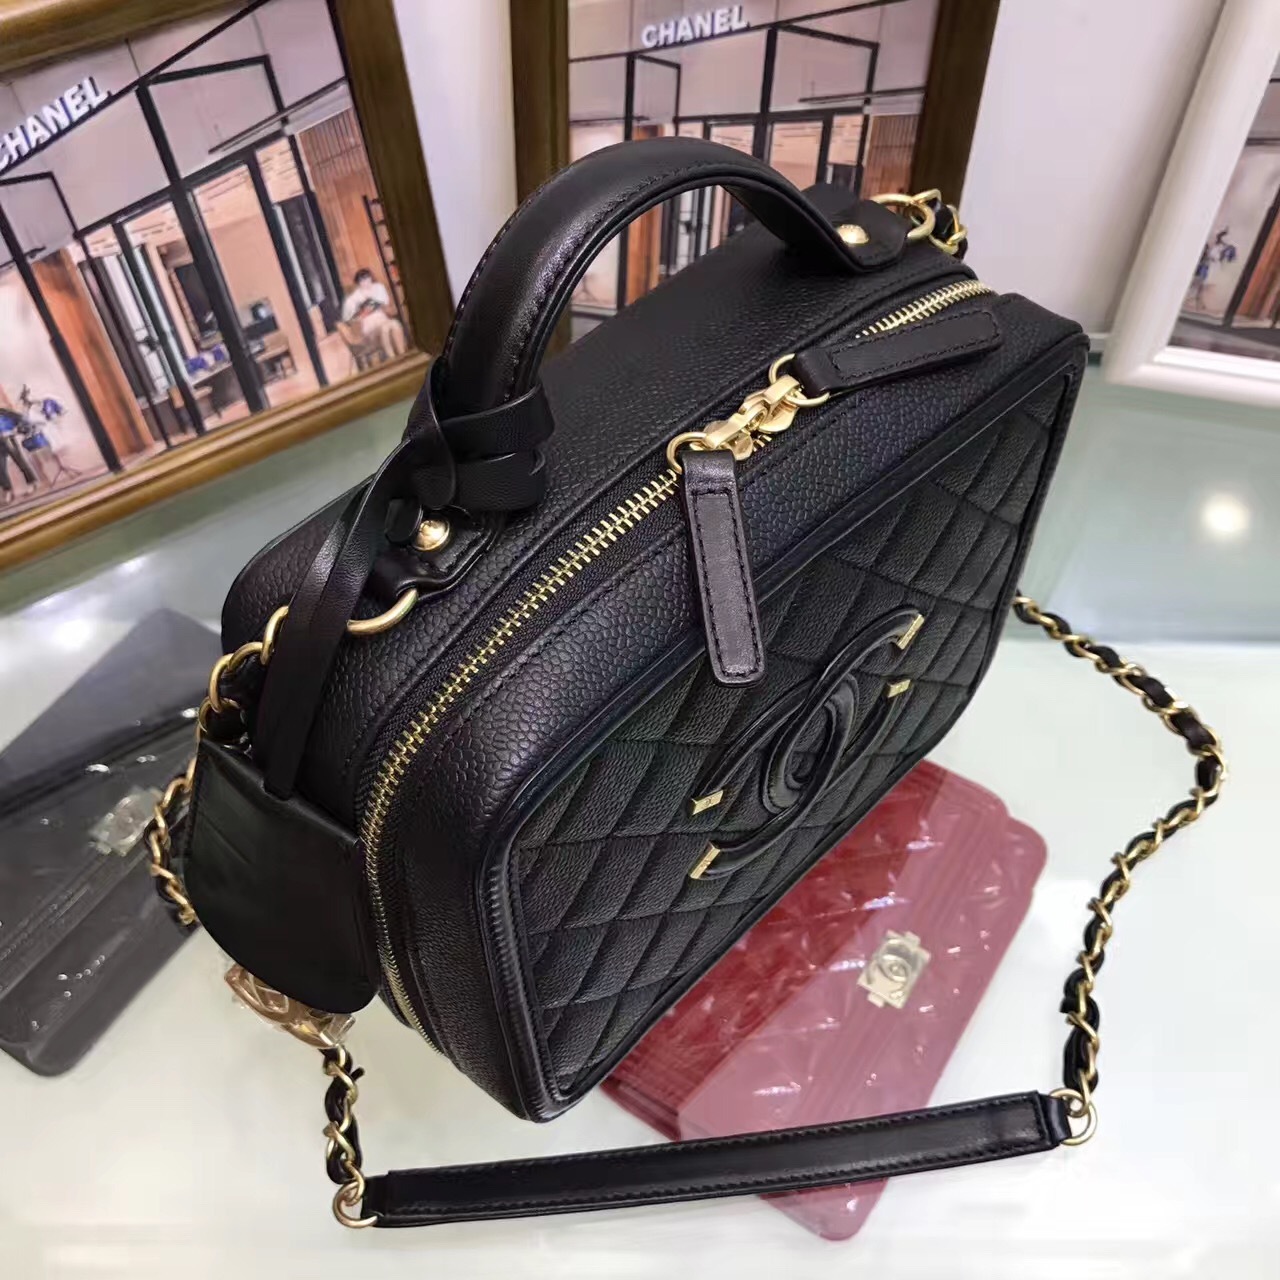 Coco chanel handbags designer crossbody chanel cosmetic bags makeup travel case chanel tote top ...